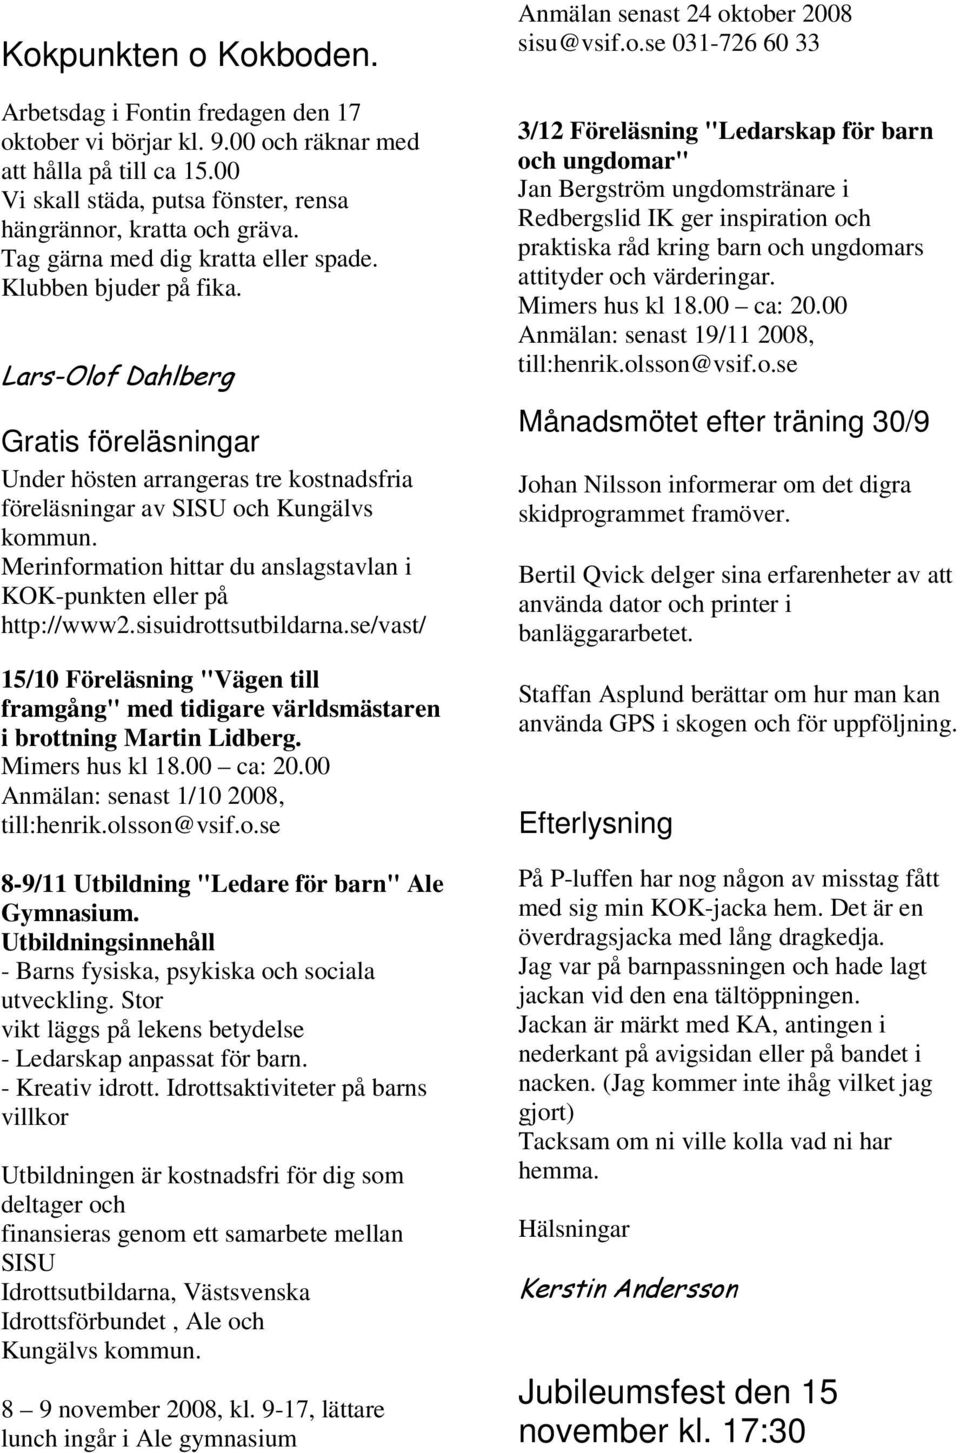 Merinformation hittar du anslagstavlan i KOK-punkten eller på http://www2.sisuidrottsutbildarna.se/vast/ 15/10 Föreläsning "Vägen till framgång" med tidigare världsmästaren i brottning Martin Lidberg.